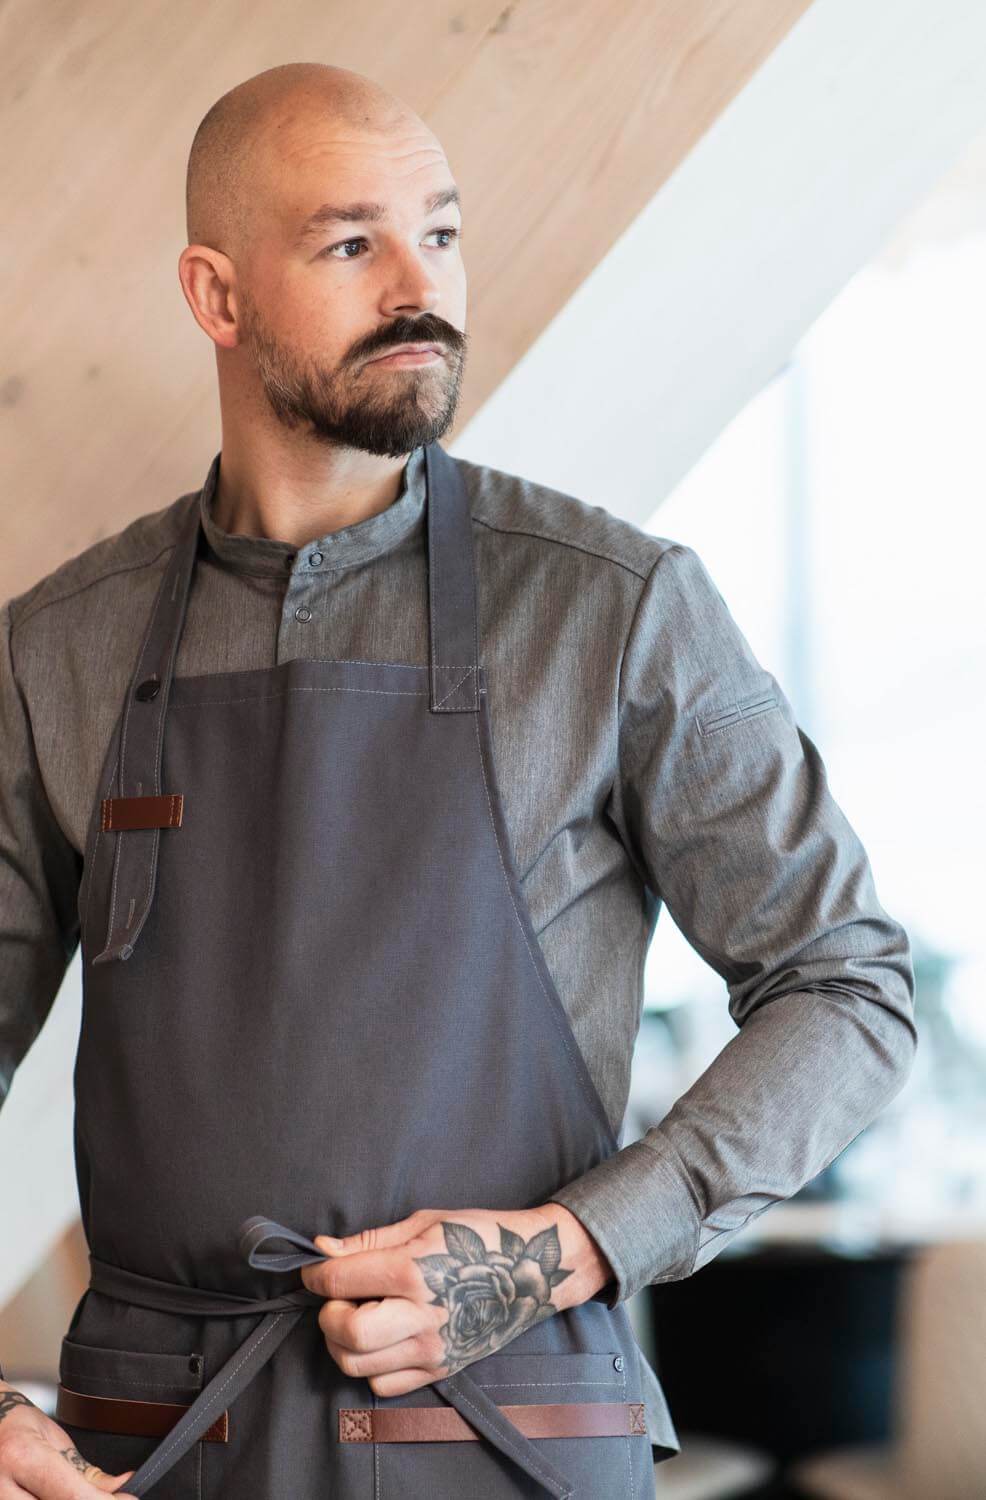 Professionell kock i Segers nya kollektion, med snygg kockskjorta modell 1109 och stilrent förkläde modell 4093, visar upp en tatuering på underarmen i en modern restaurangmiljö.